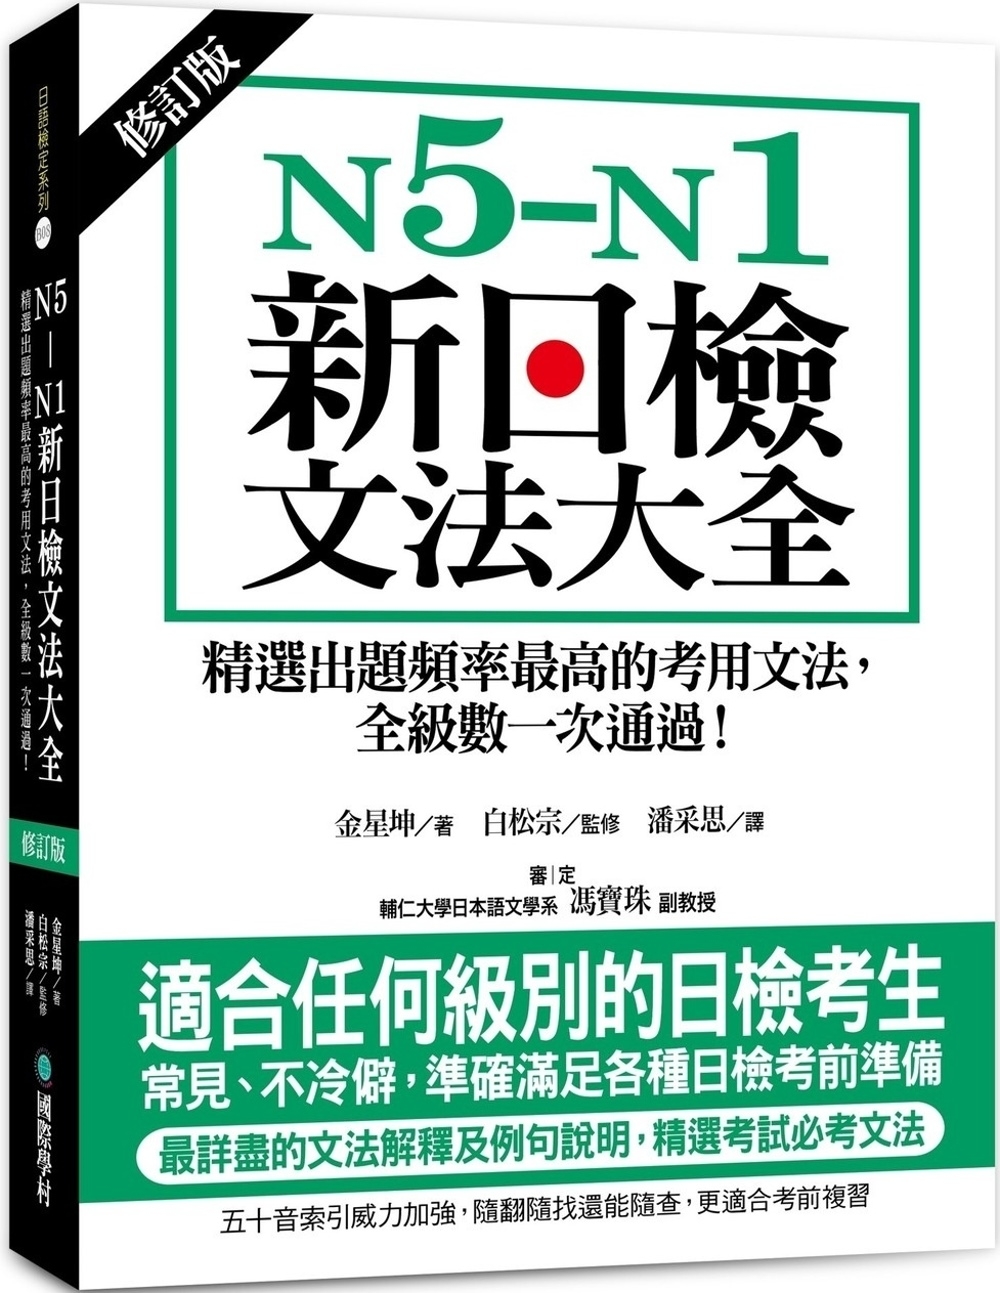 N5-N1新日檢文法大全【修訂版】：精選出題頻率最高的考用文法，全級數一次通過！